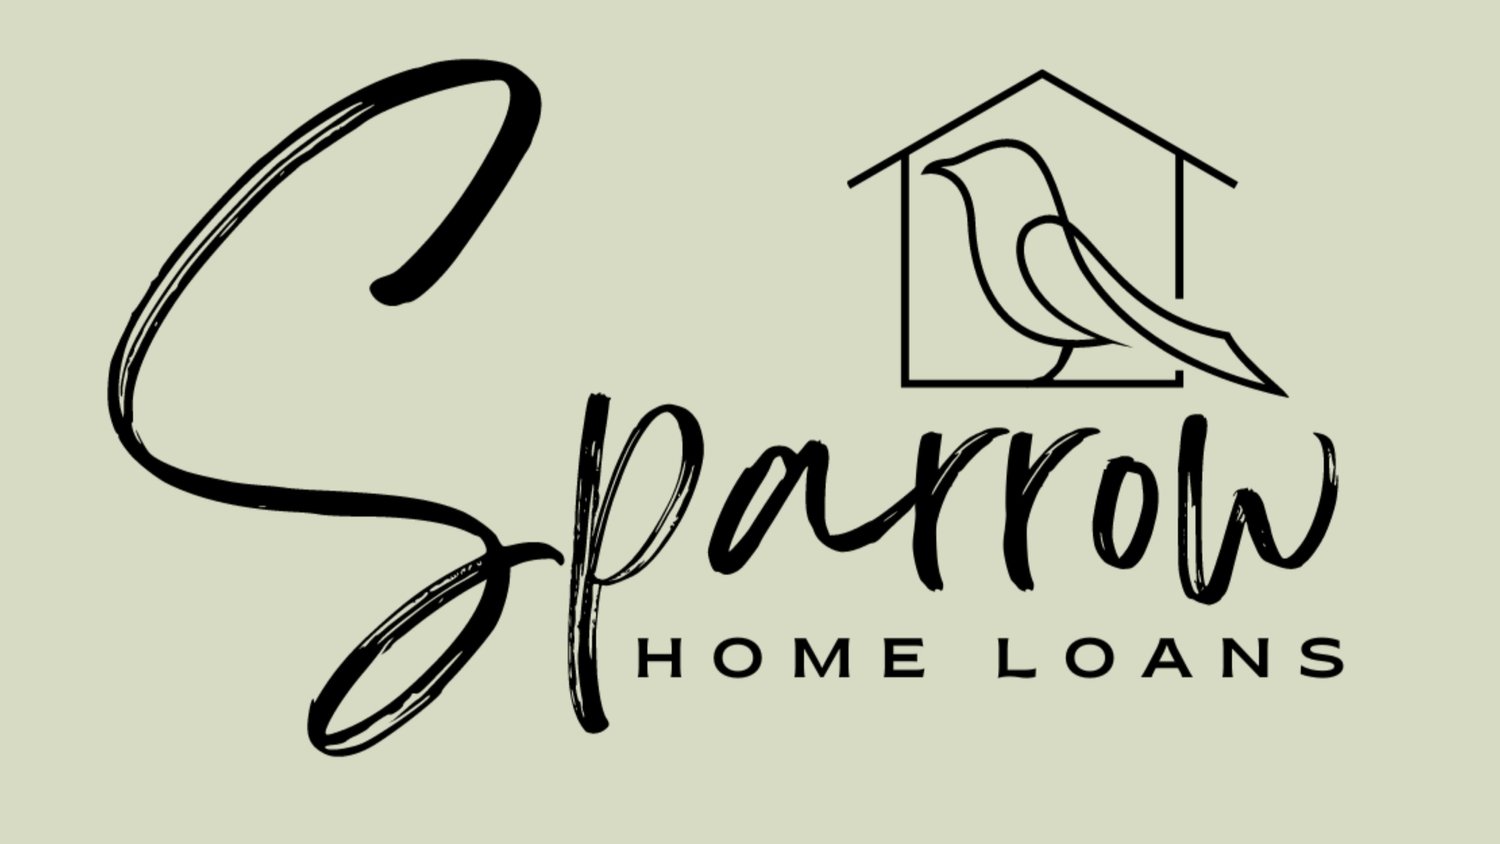 Sparrow Home Loans